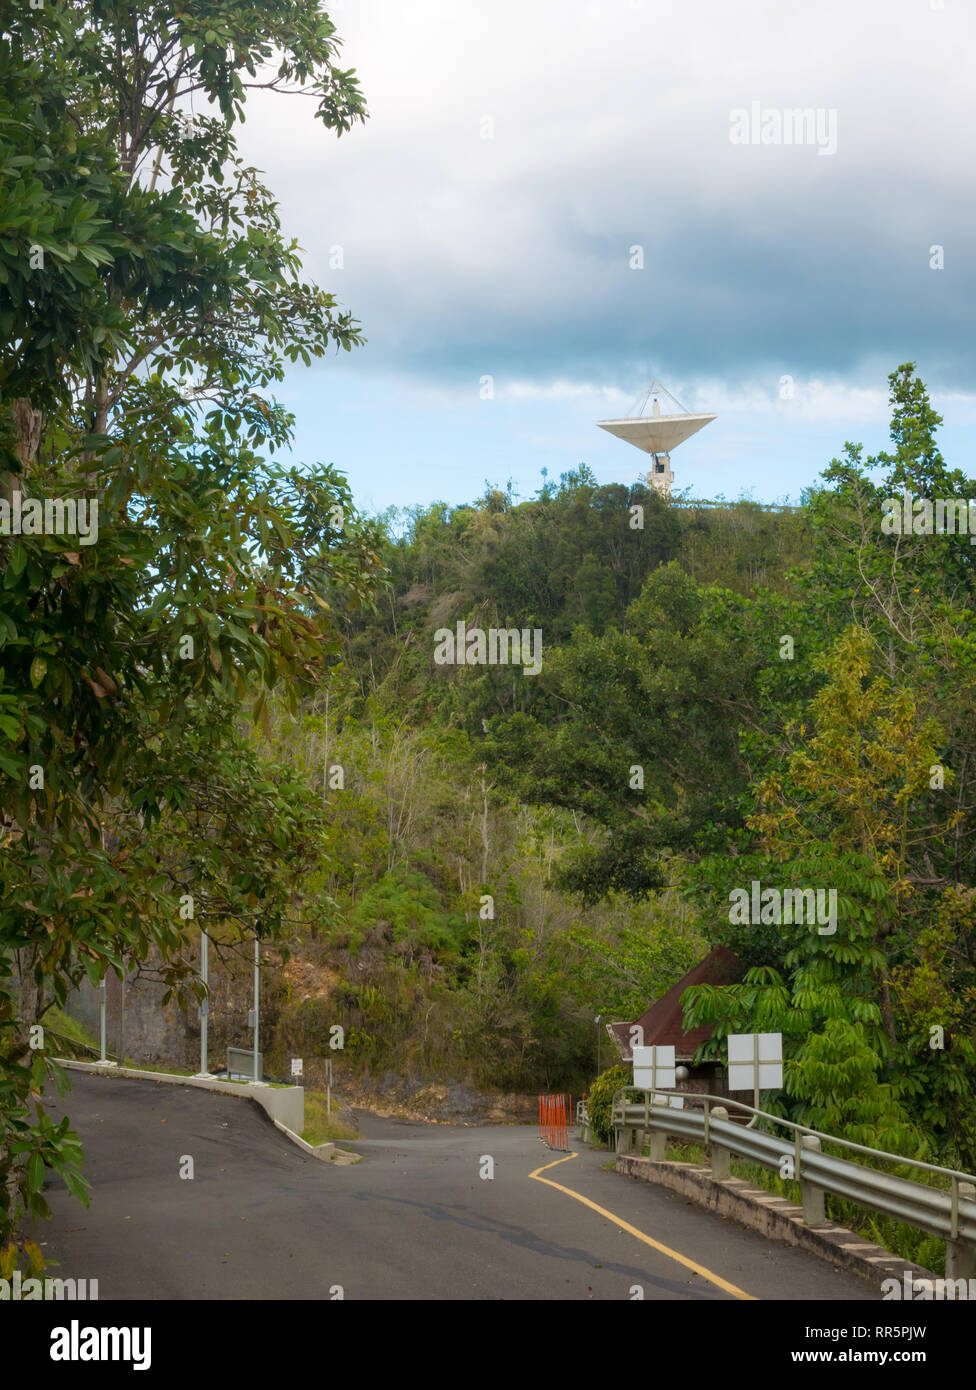 Arecibo, Puerto Rico. January 2019. : The Arecibo Observatory radio telescope in the hills of Arecibo, Puerto Rico. Stock Photo